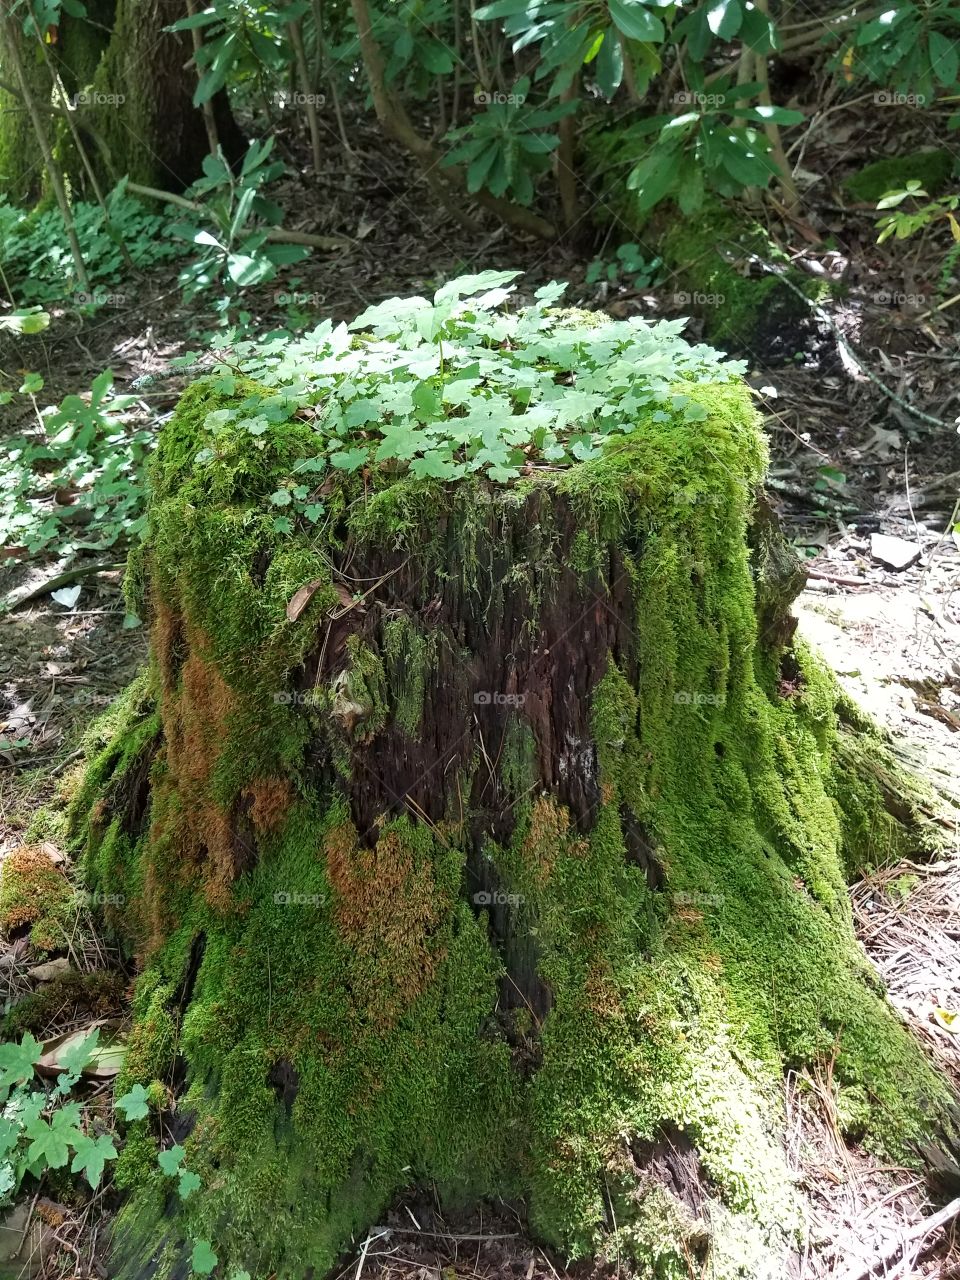 Overgrown stump